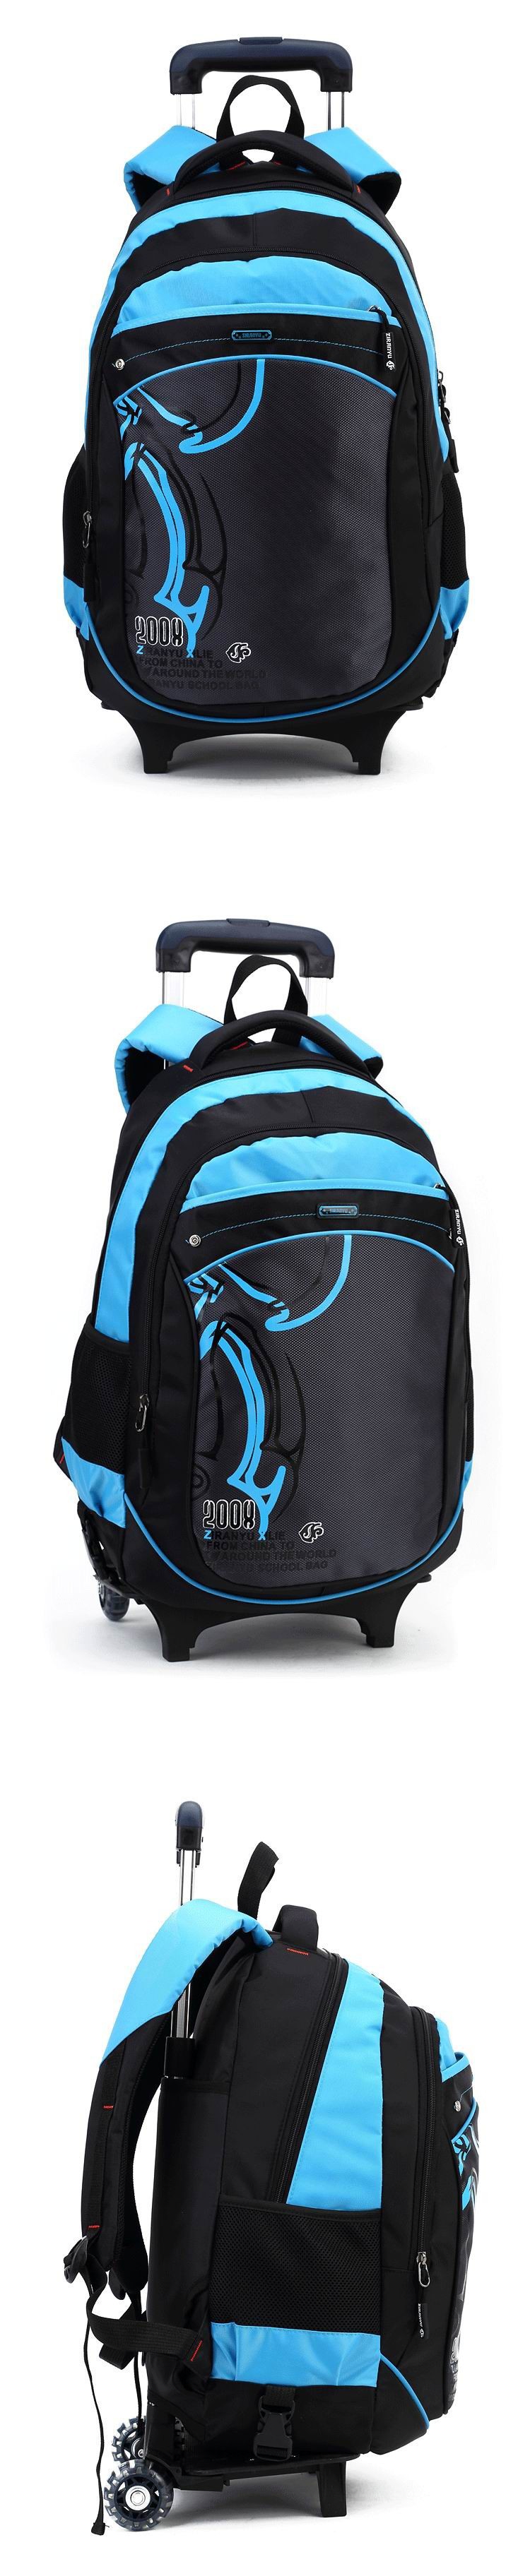 school-trolley-backpack-bag-wheels-backpack-luggage-travel-2